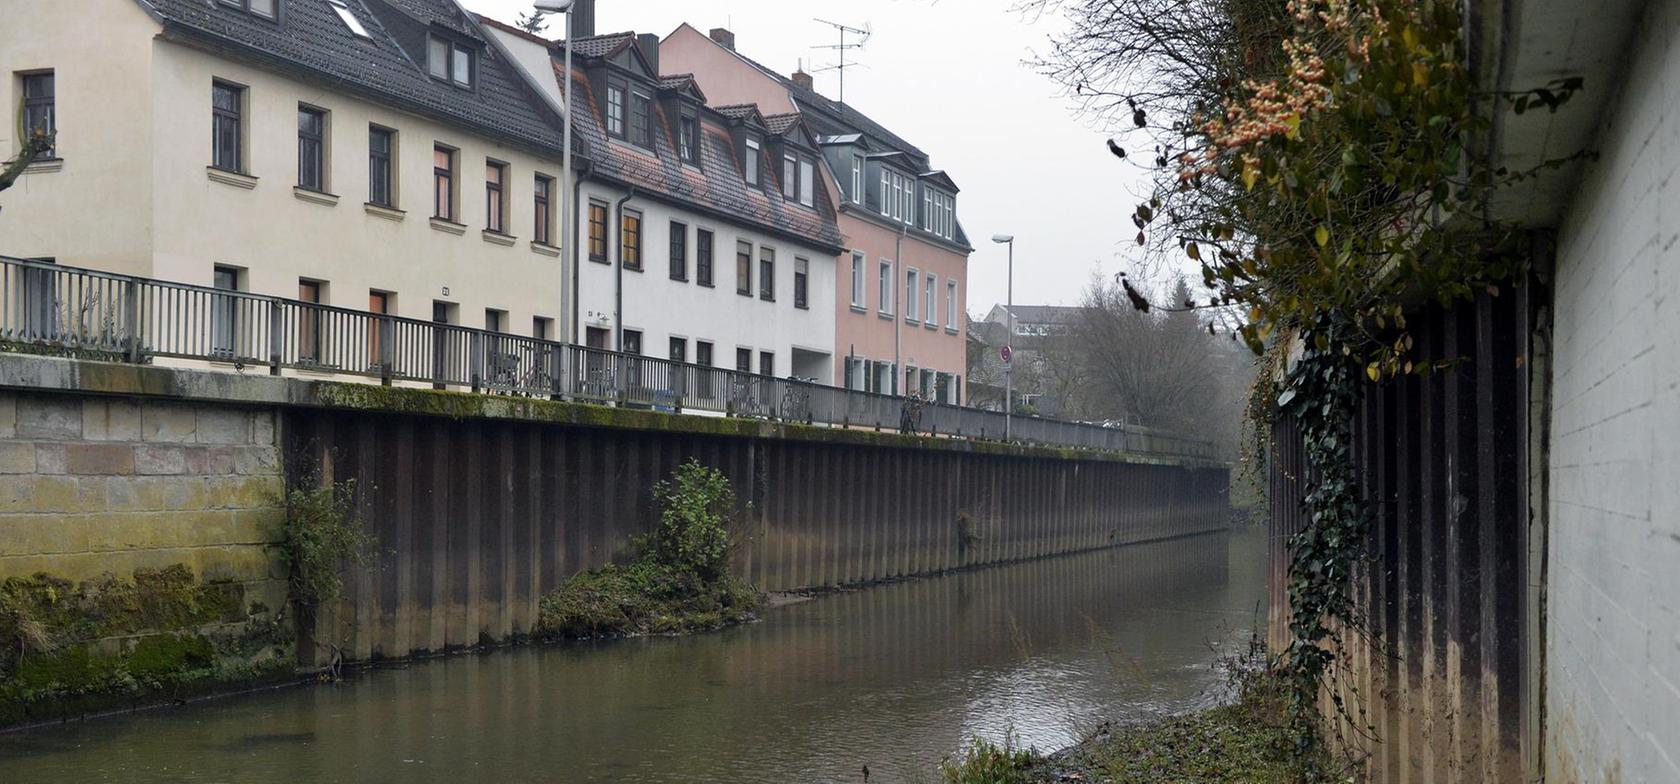 Schutzmauern gegen Hochwasser in Erlangen geplant